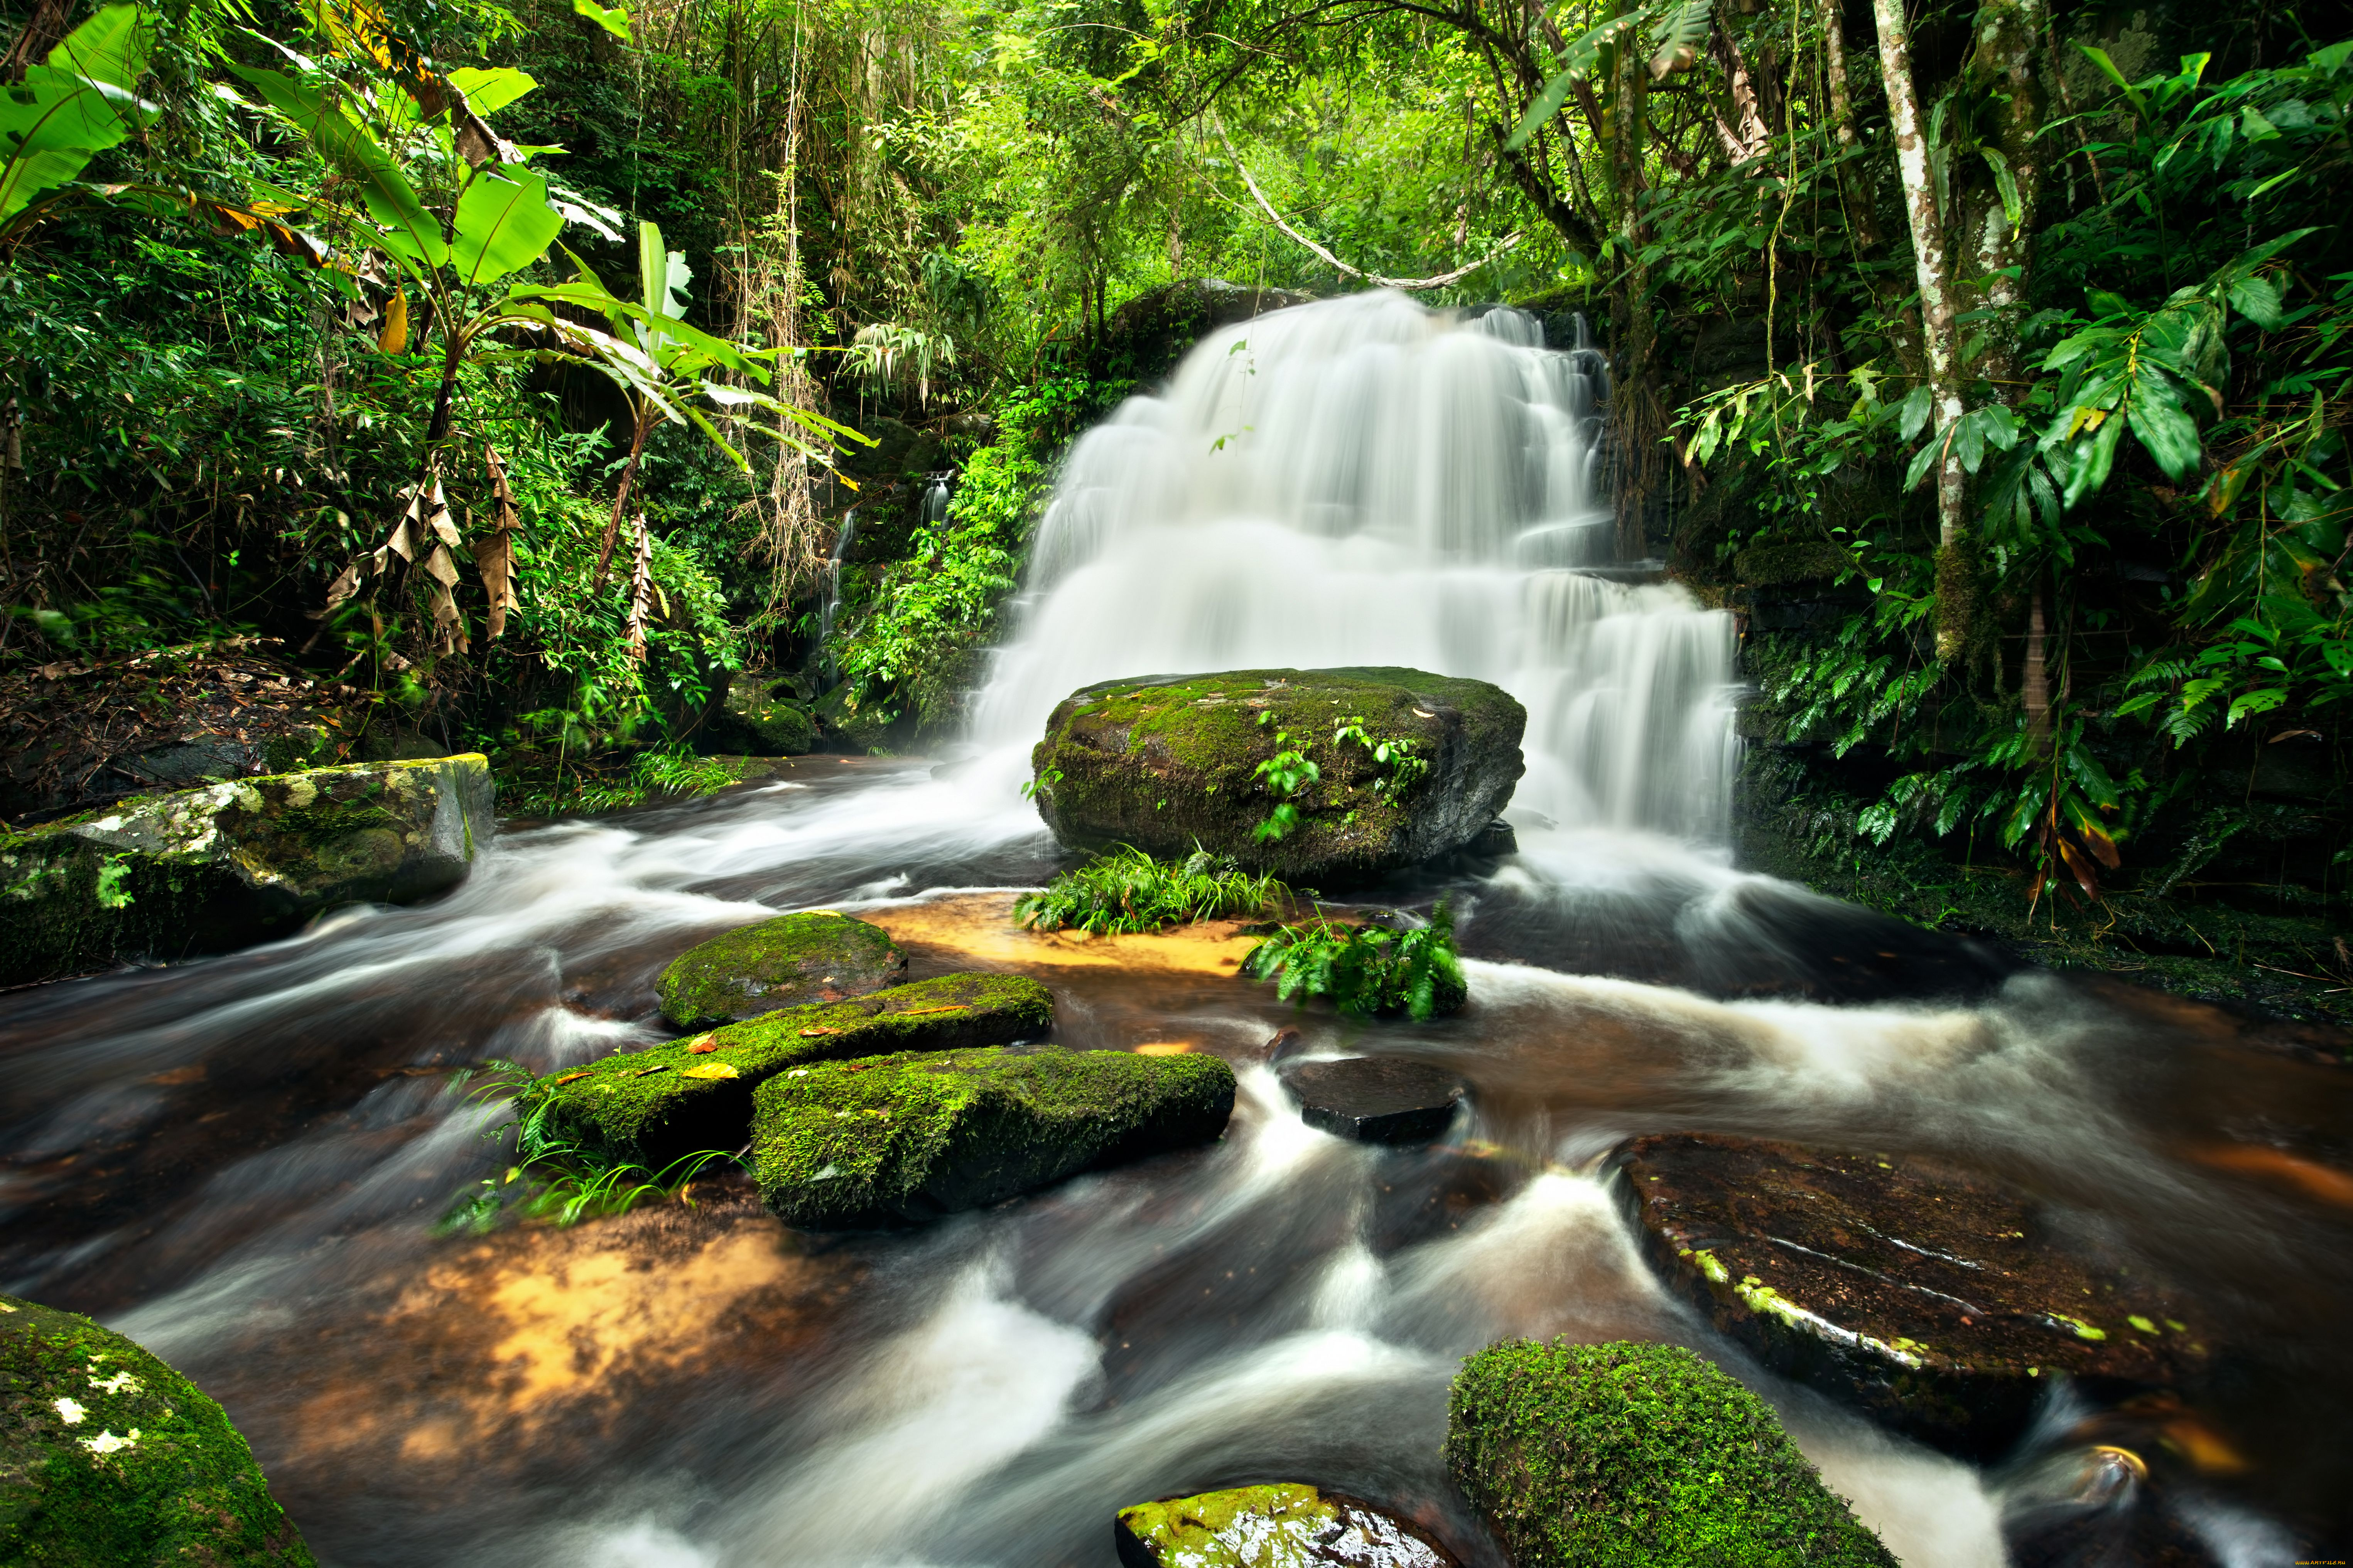 Заставка на телефон для женщин природа. Красивые водопады. Лесной водопад. Природа джунгли. Фотообои природа.